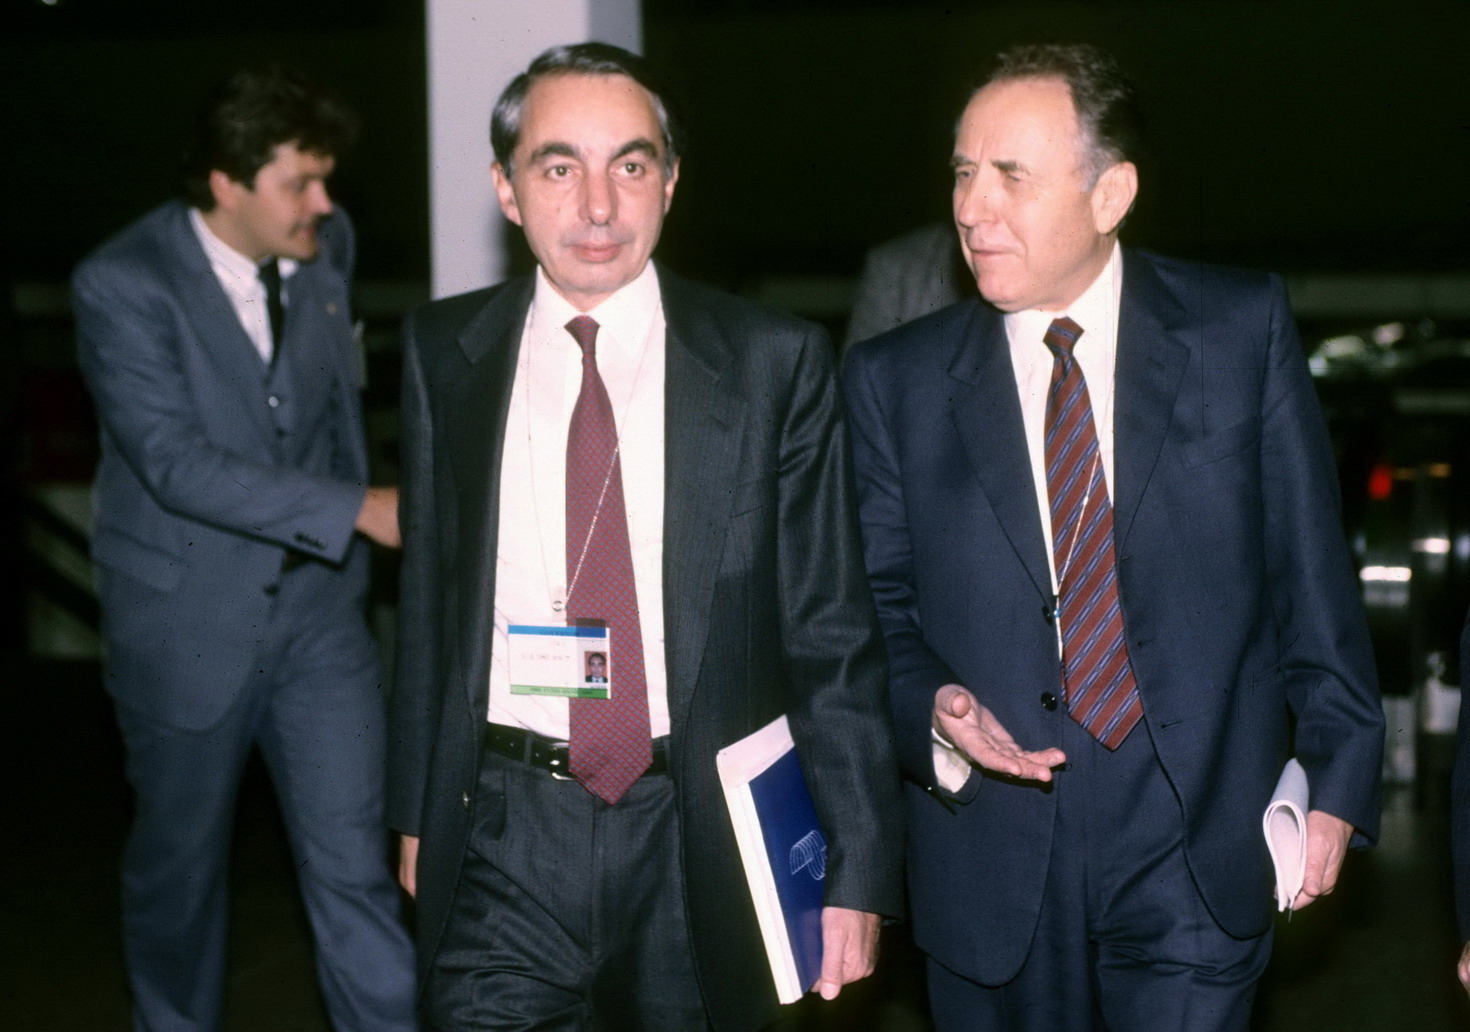 Giuliano Amato, Carlo Azeglio Ciampi (1988)